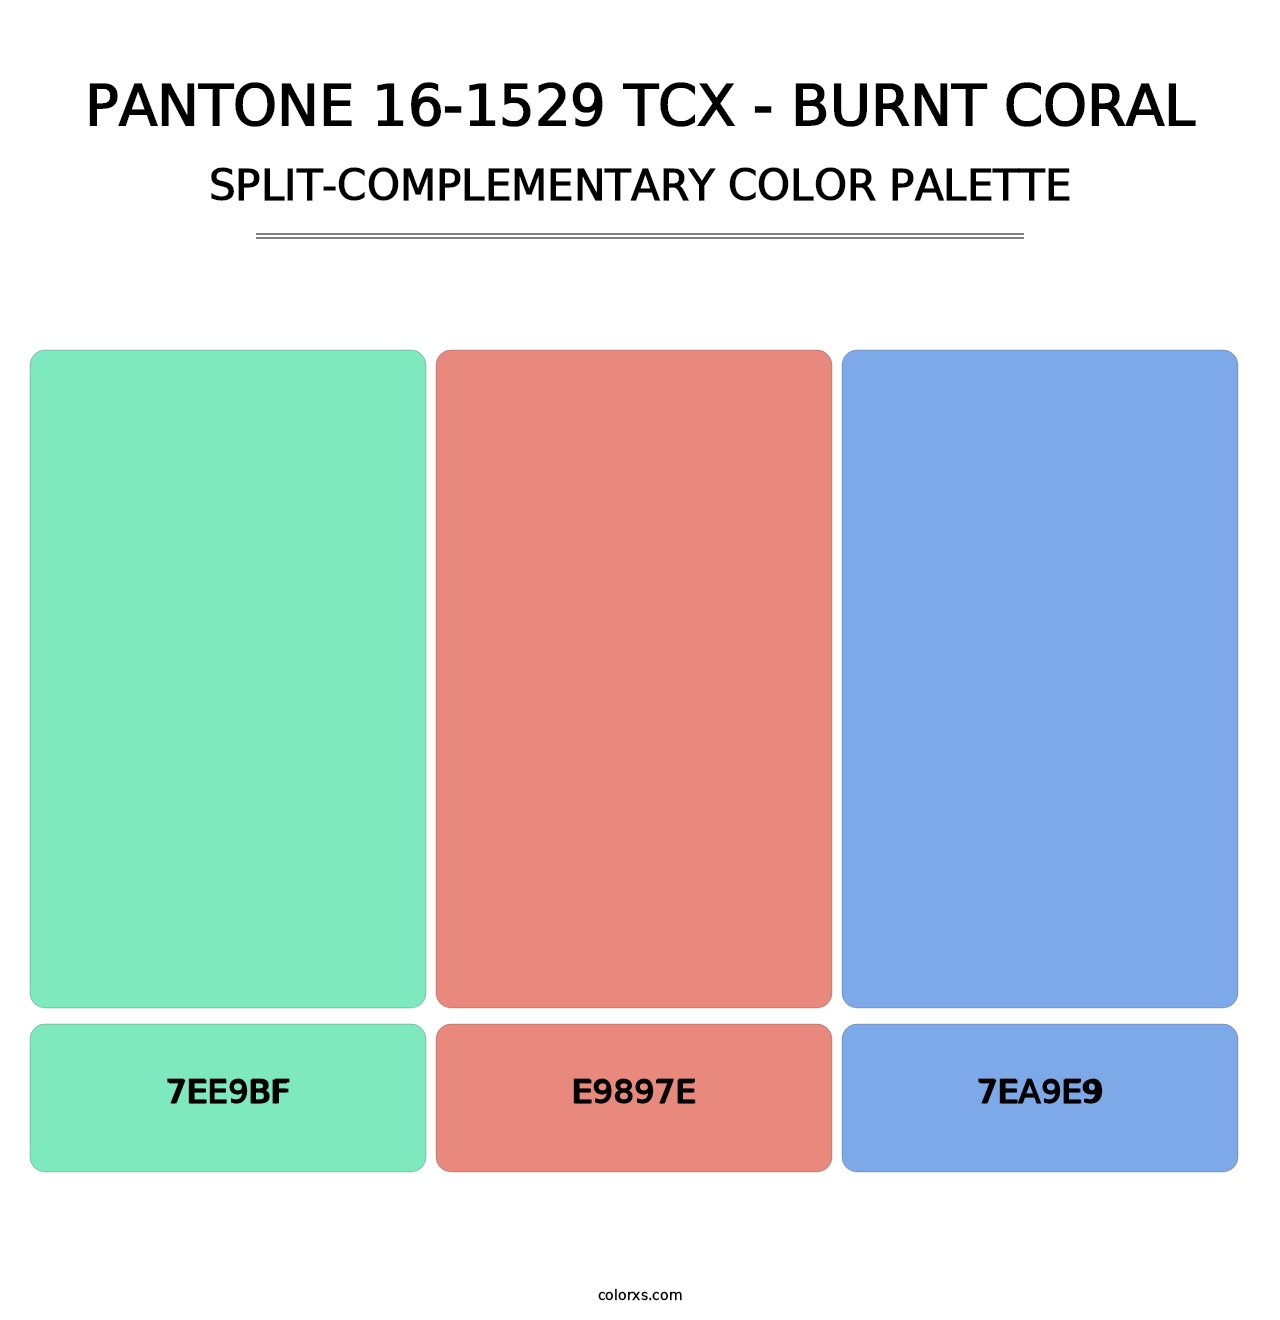 PANTONE 16-1529 TCX - Burnt Coral - Split-Complementary Color Palette